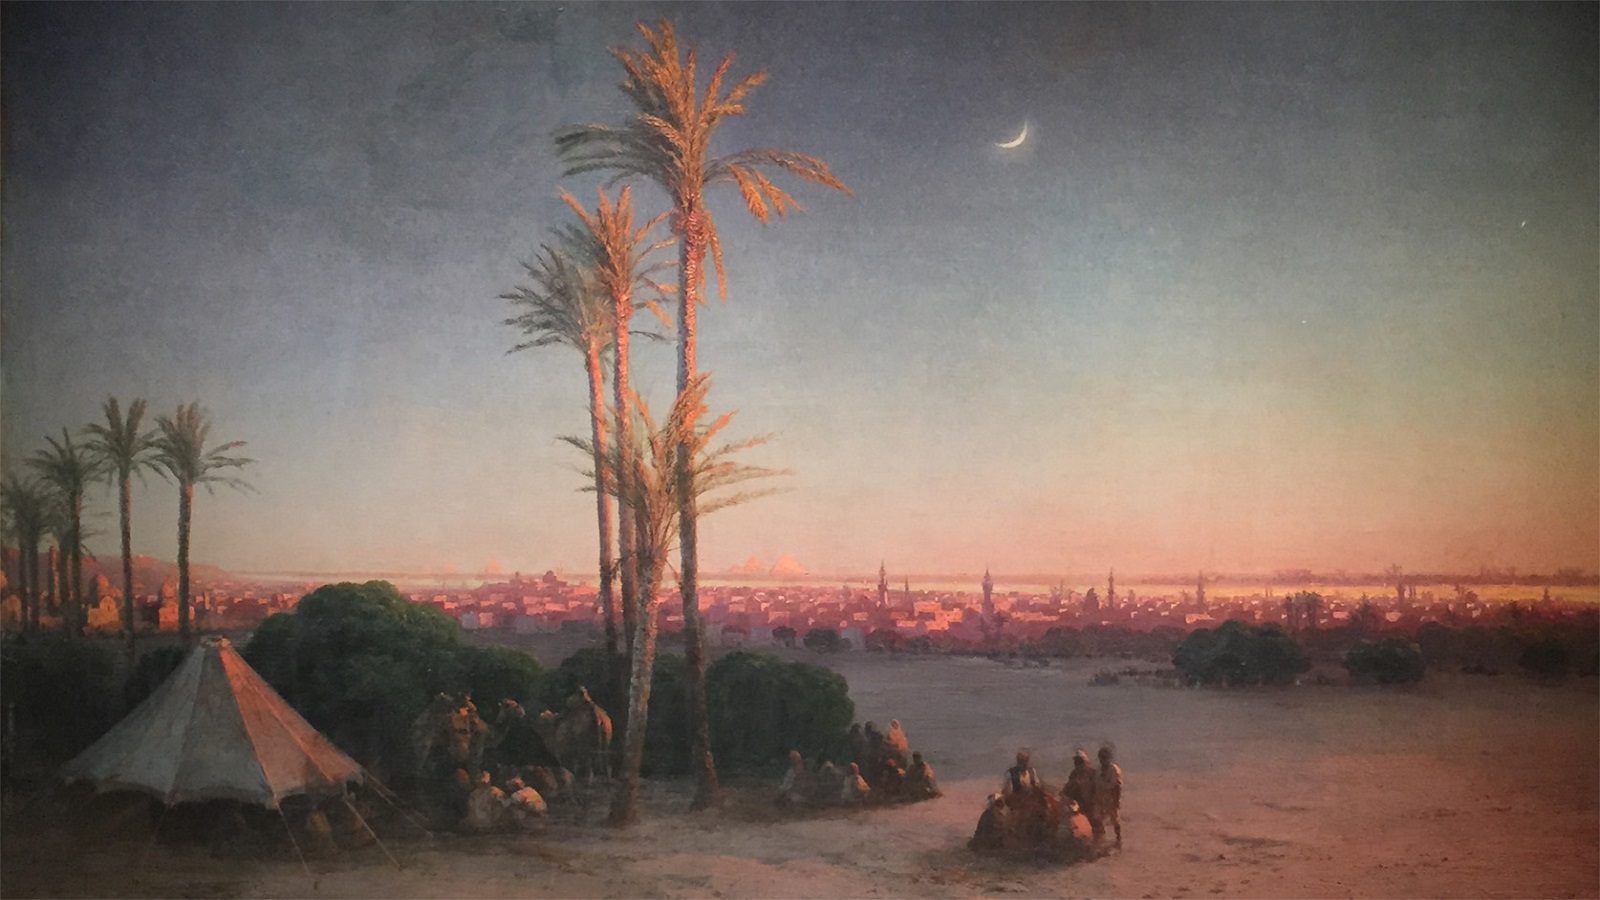  القاهرة – إيفان إيفازوفسكي